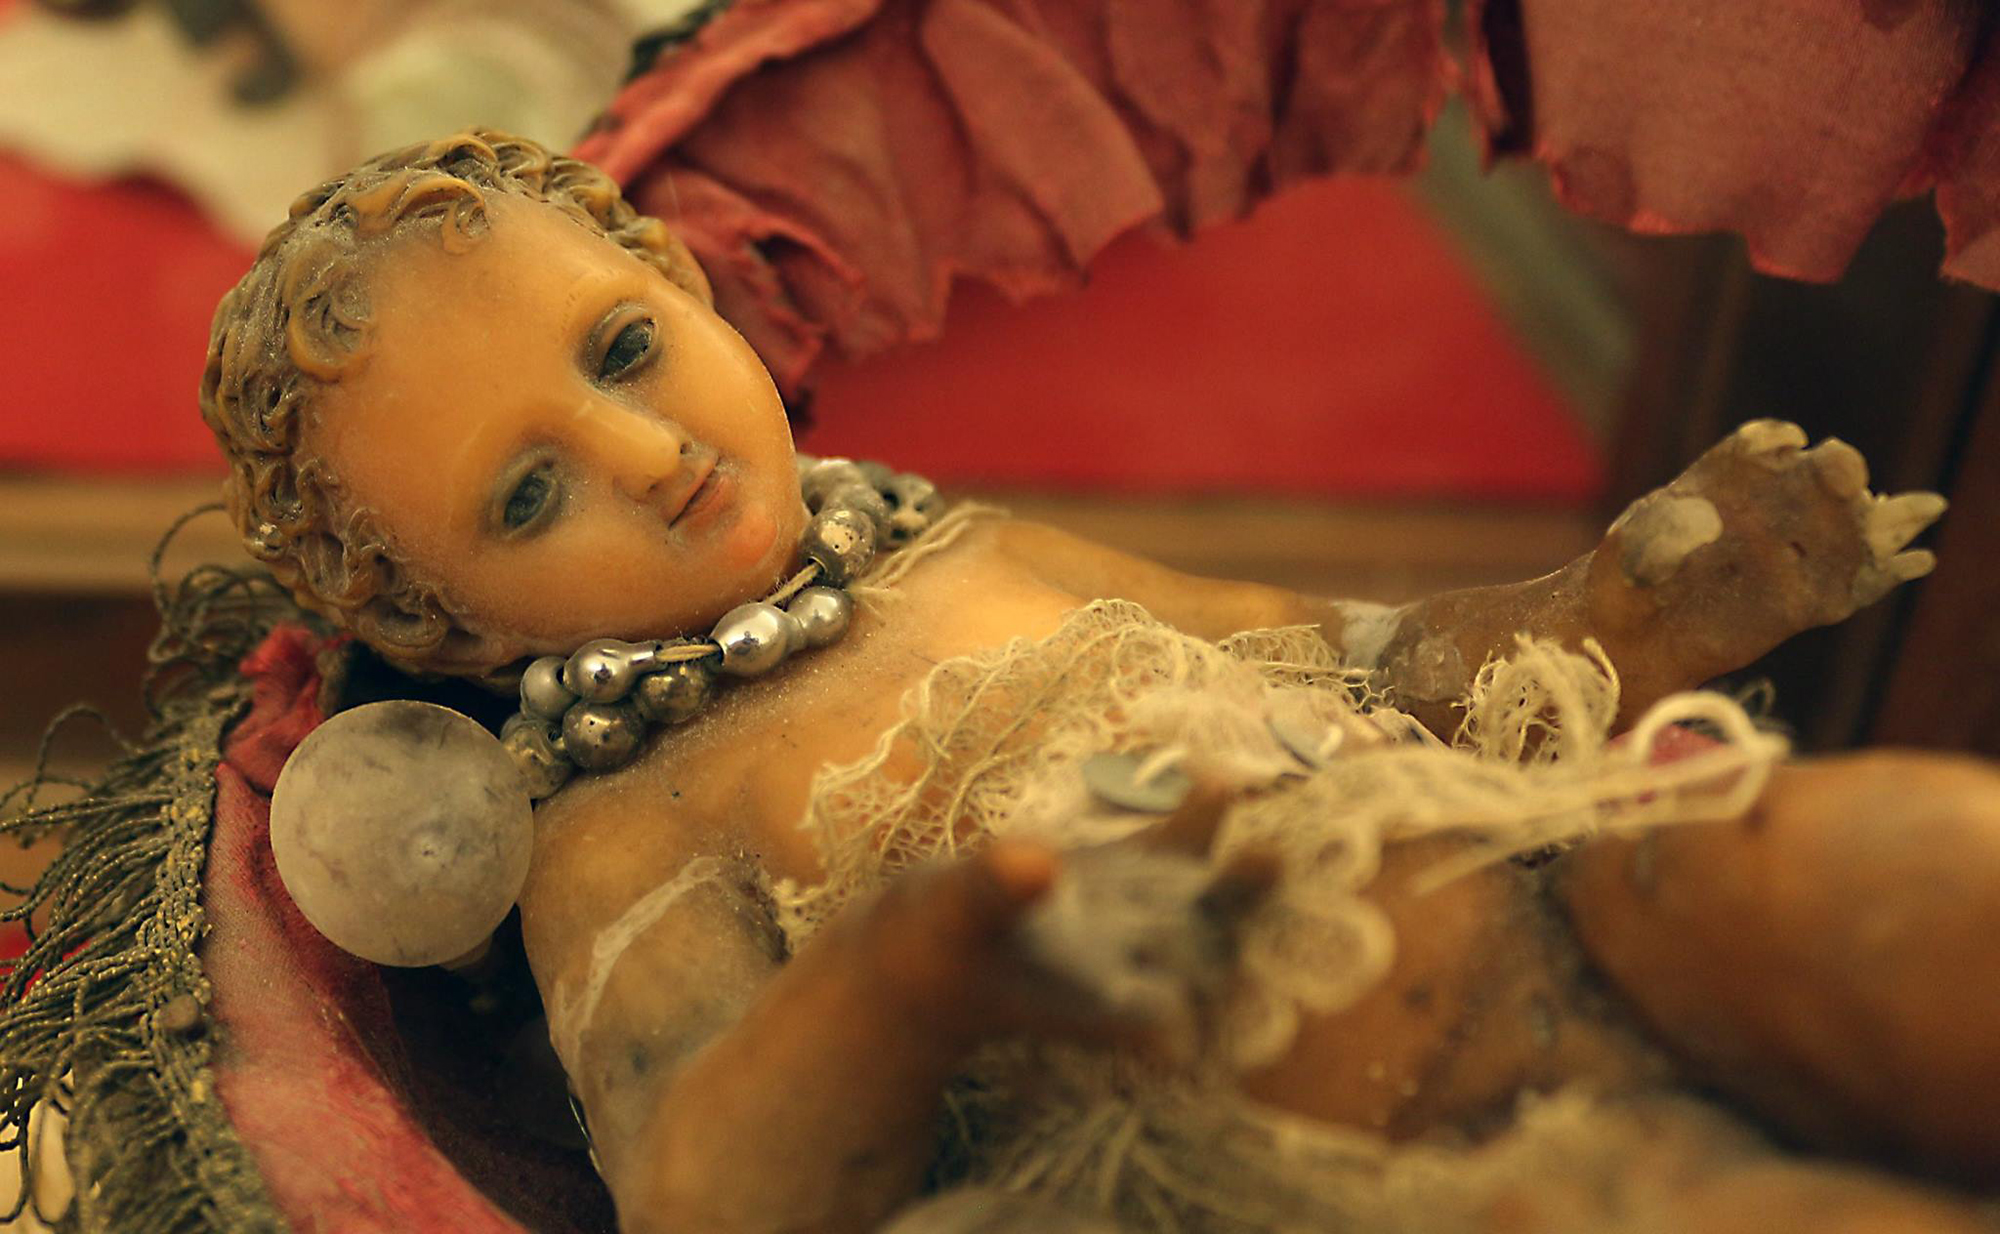 Pedalino, R., Gesù Bambino/ particolare, cera, fine XIX secolo, 2017, fotografia digitale